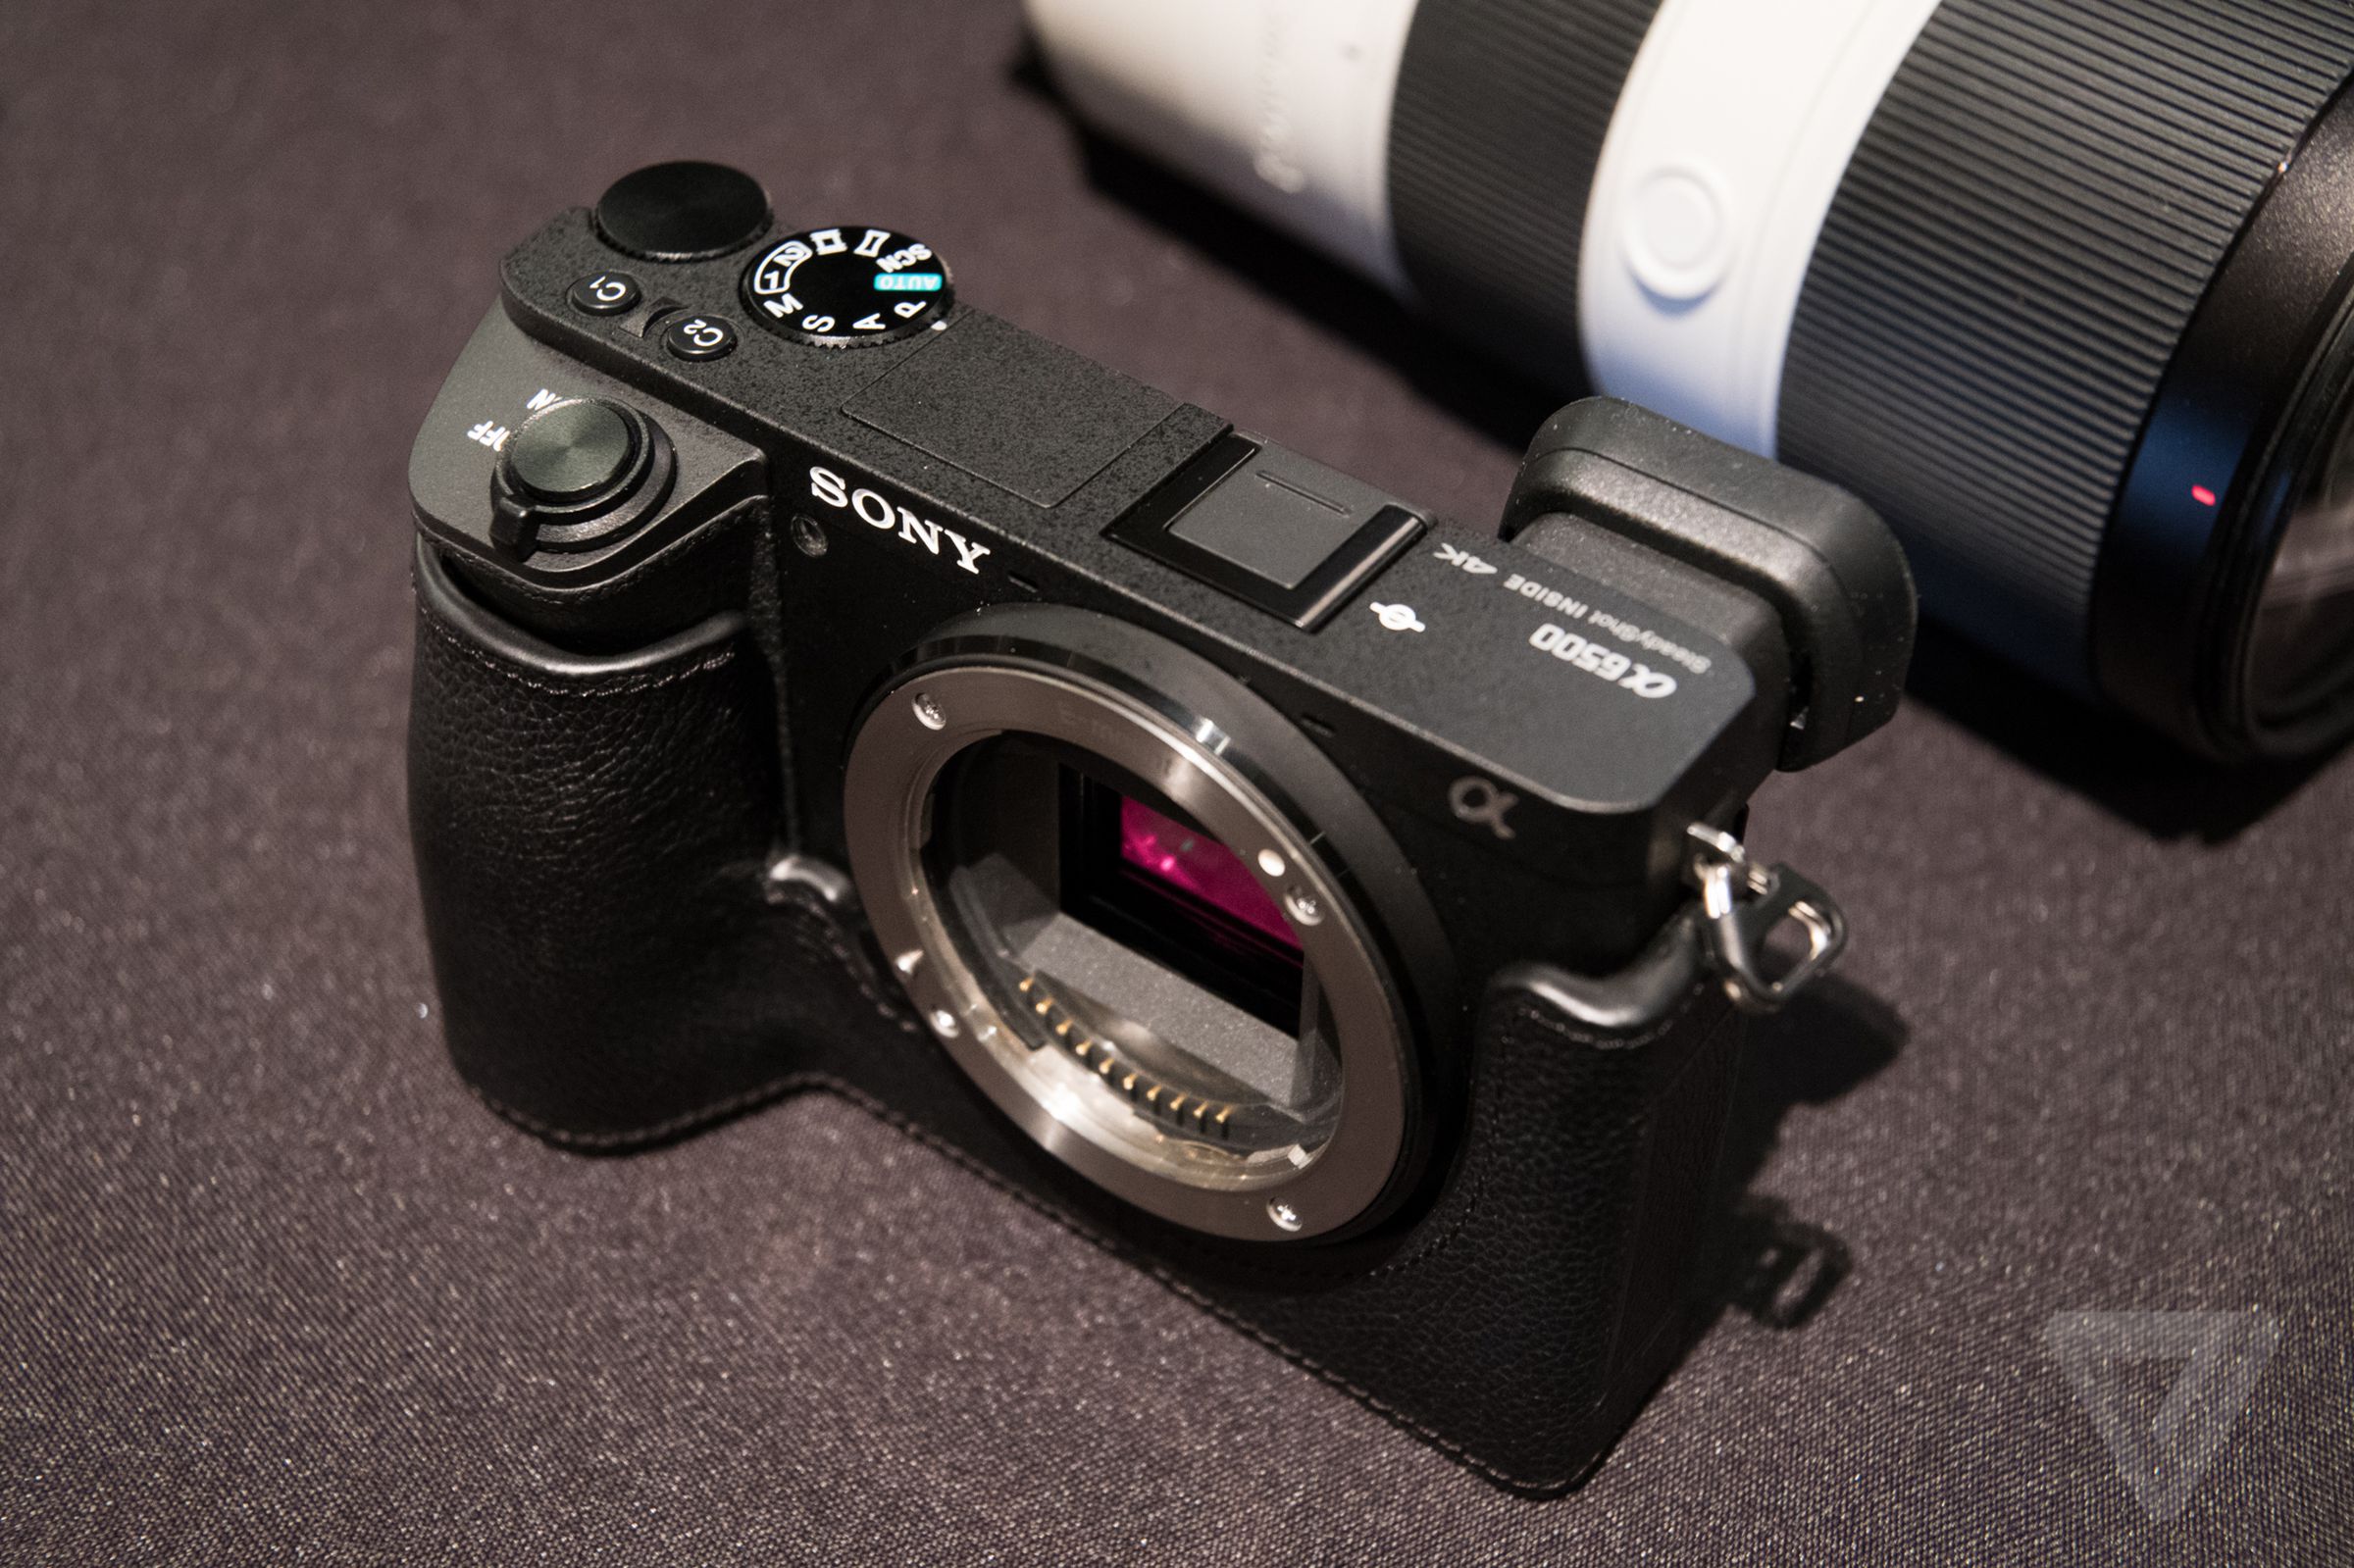 Sony A6500 in photos